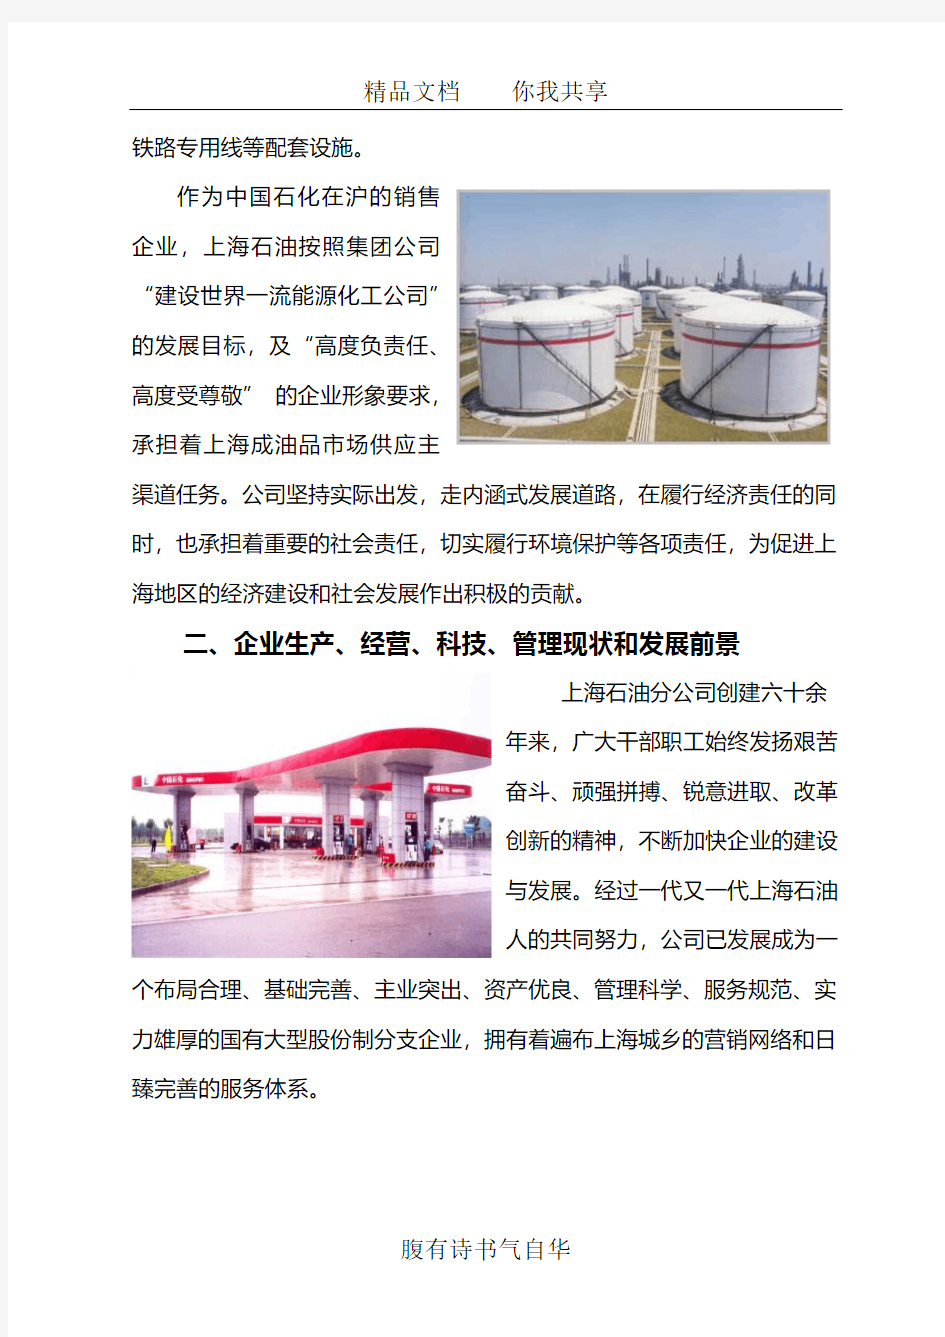 中国石化销售有限公司上海石油分公司(更新至2014)